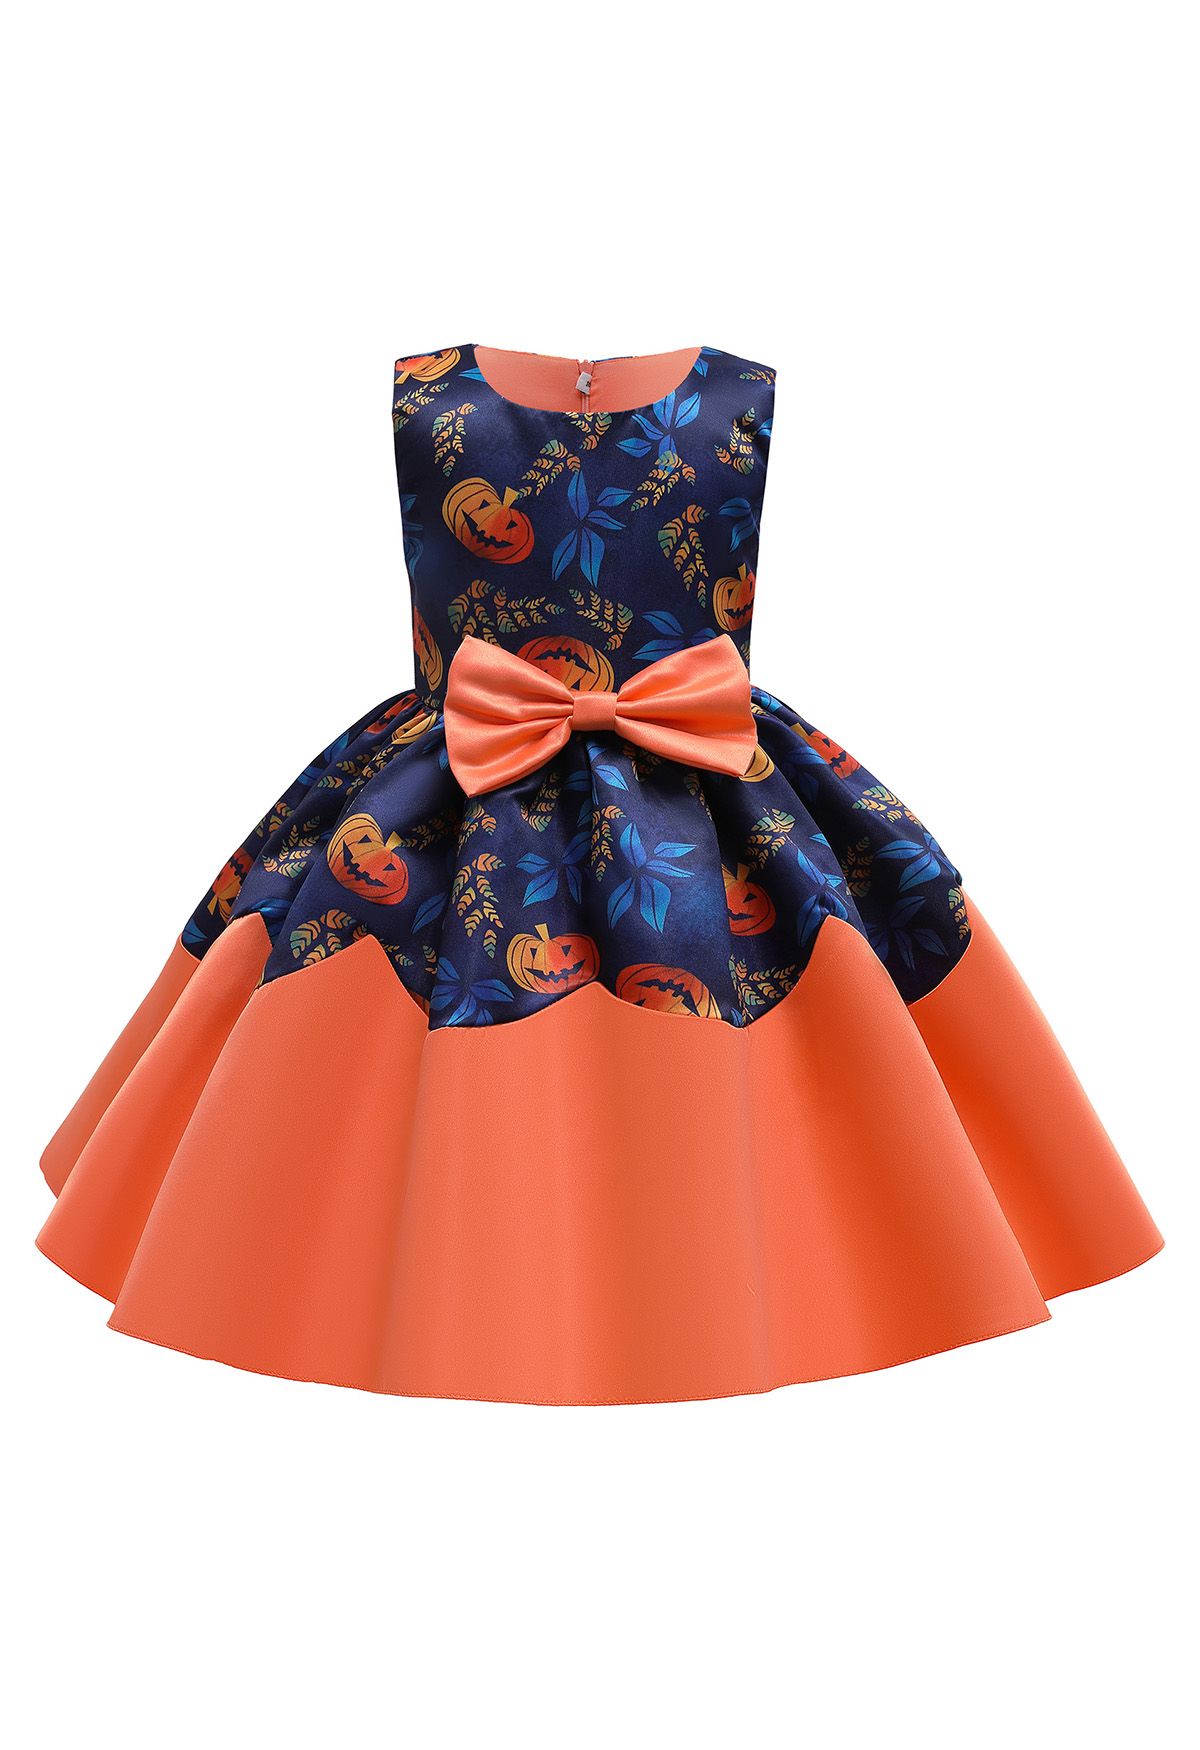 Kids' Pumpkin Lantern Bowknot Pleated Princess Dress